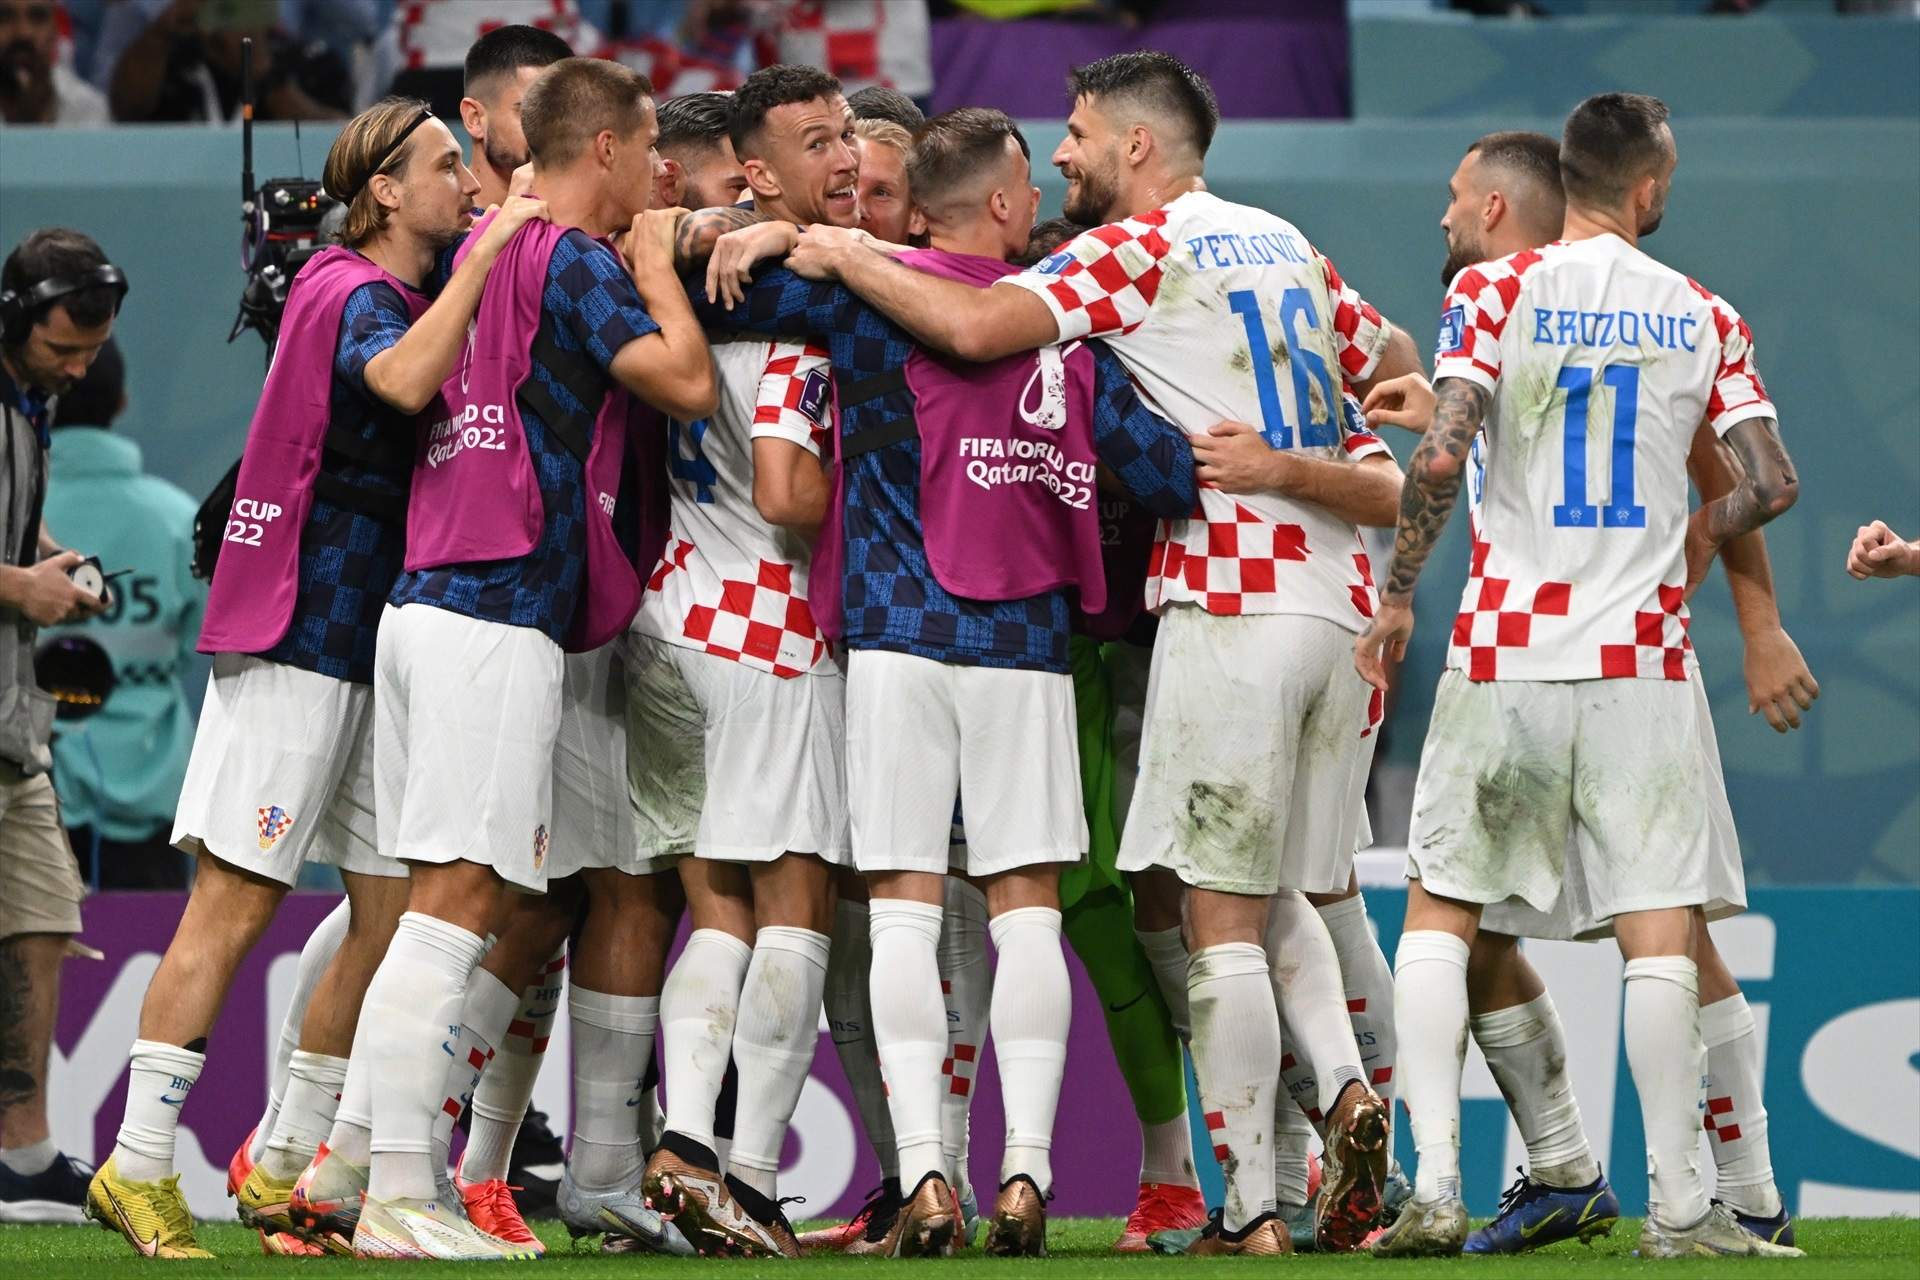 La selección croata logra el pase a los cuartos de final tras una actuación estelar de Livakovic, que paró tres lanzamientos. Perisic mandó el partido a la prórroga con un testarazo letal